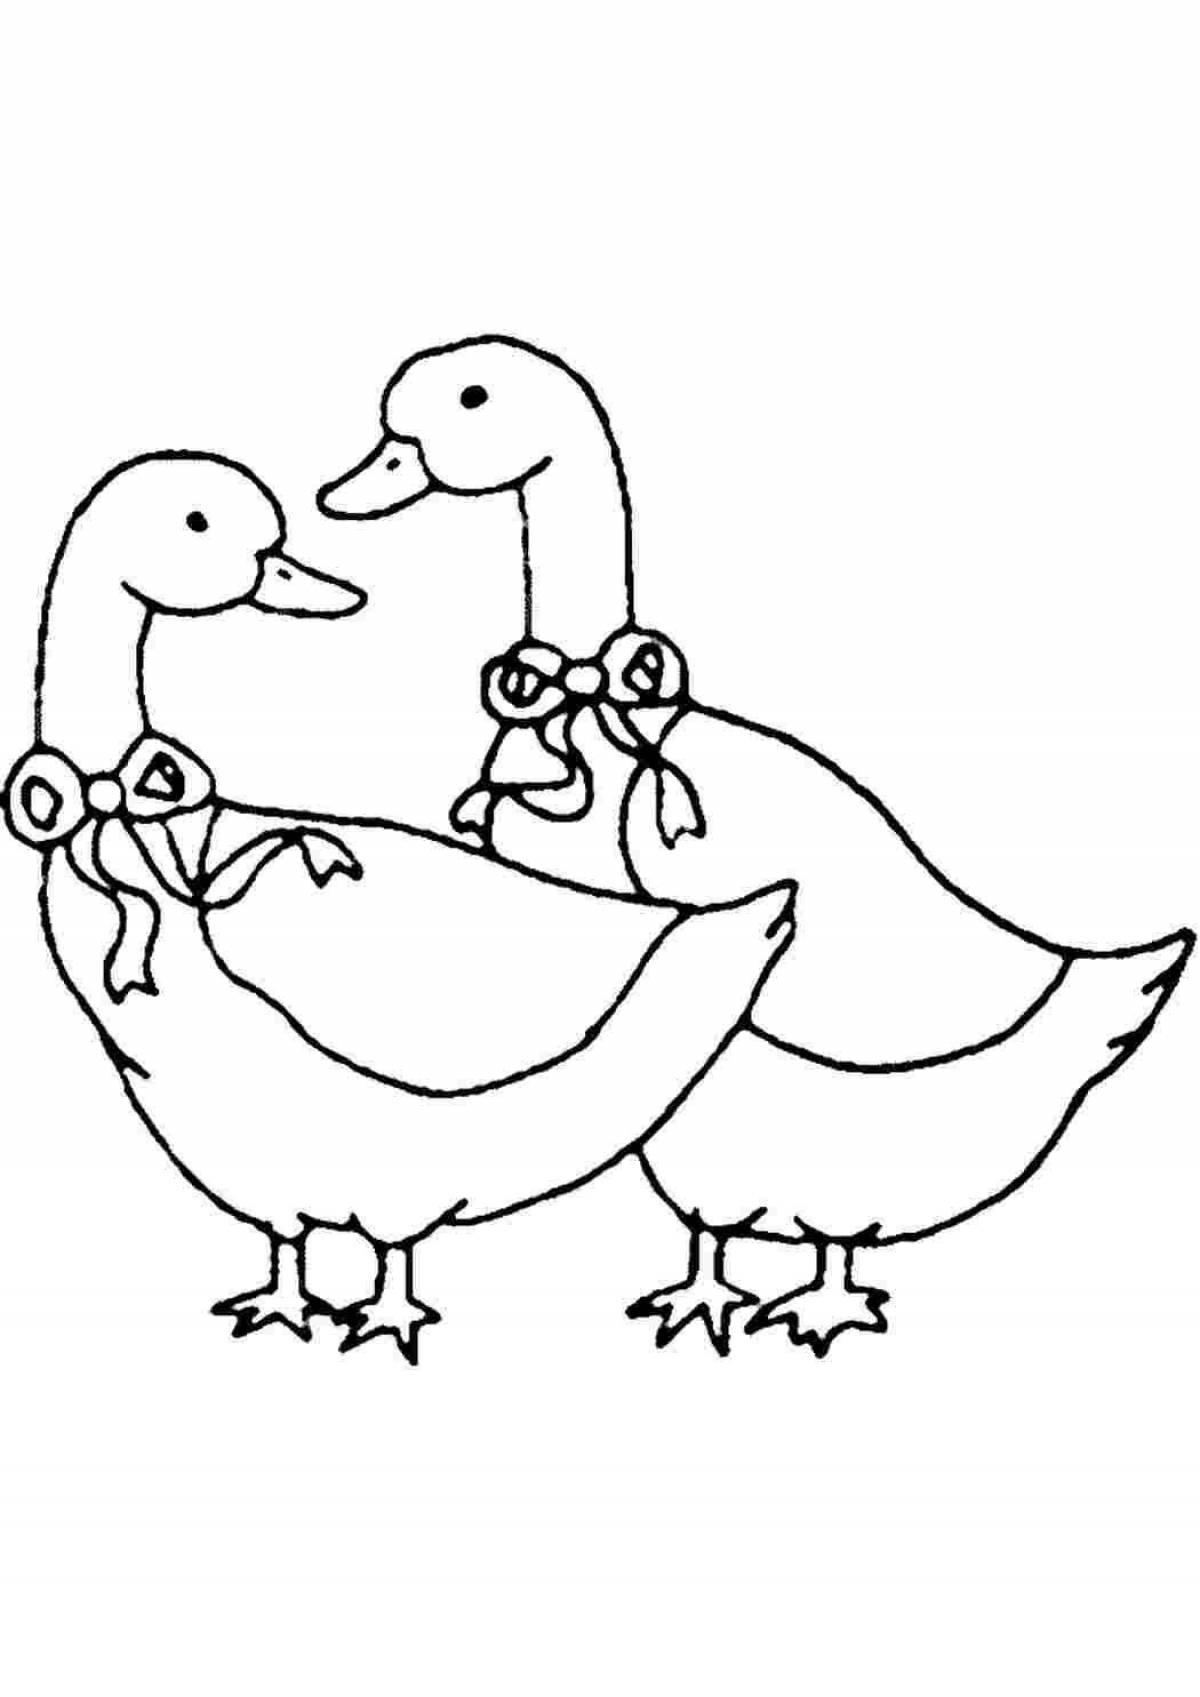 Раскраска 2 веселых гуся для детей